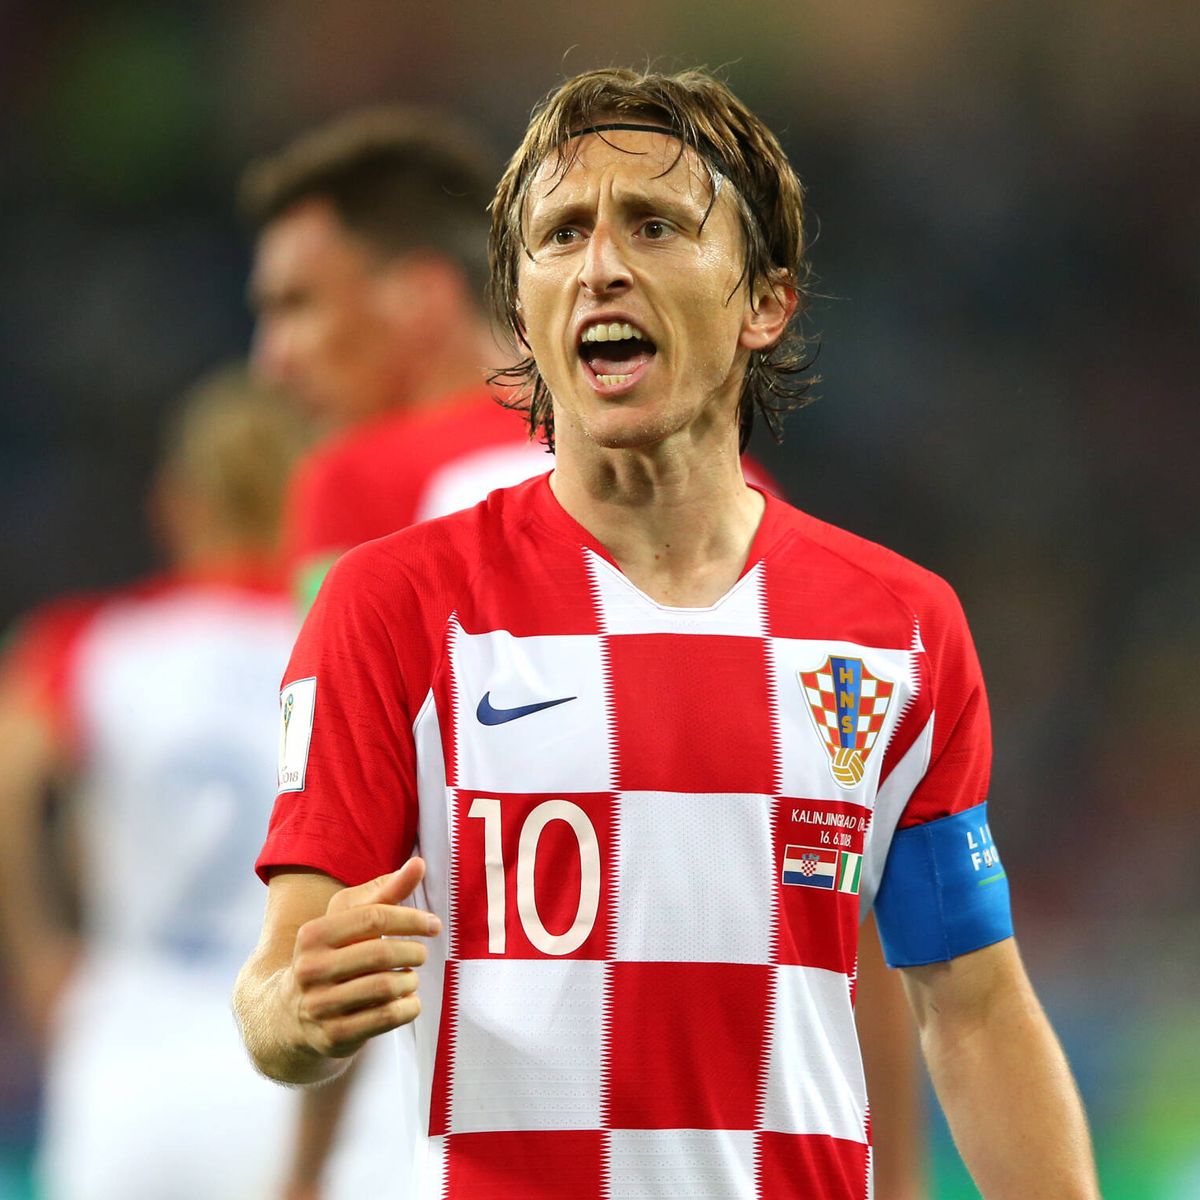 Entre Subordinar excursionismo Luka Modric: la dura infancia en plena guerra y el ejemplo de superación  del capitán croata